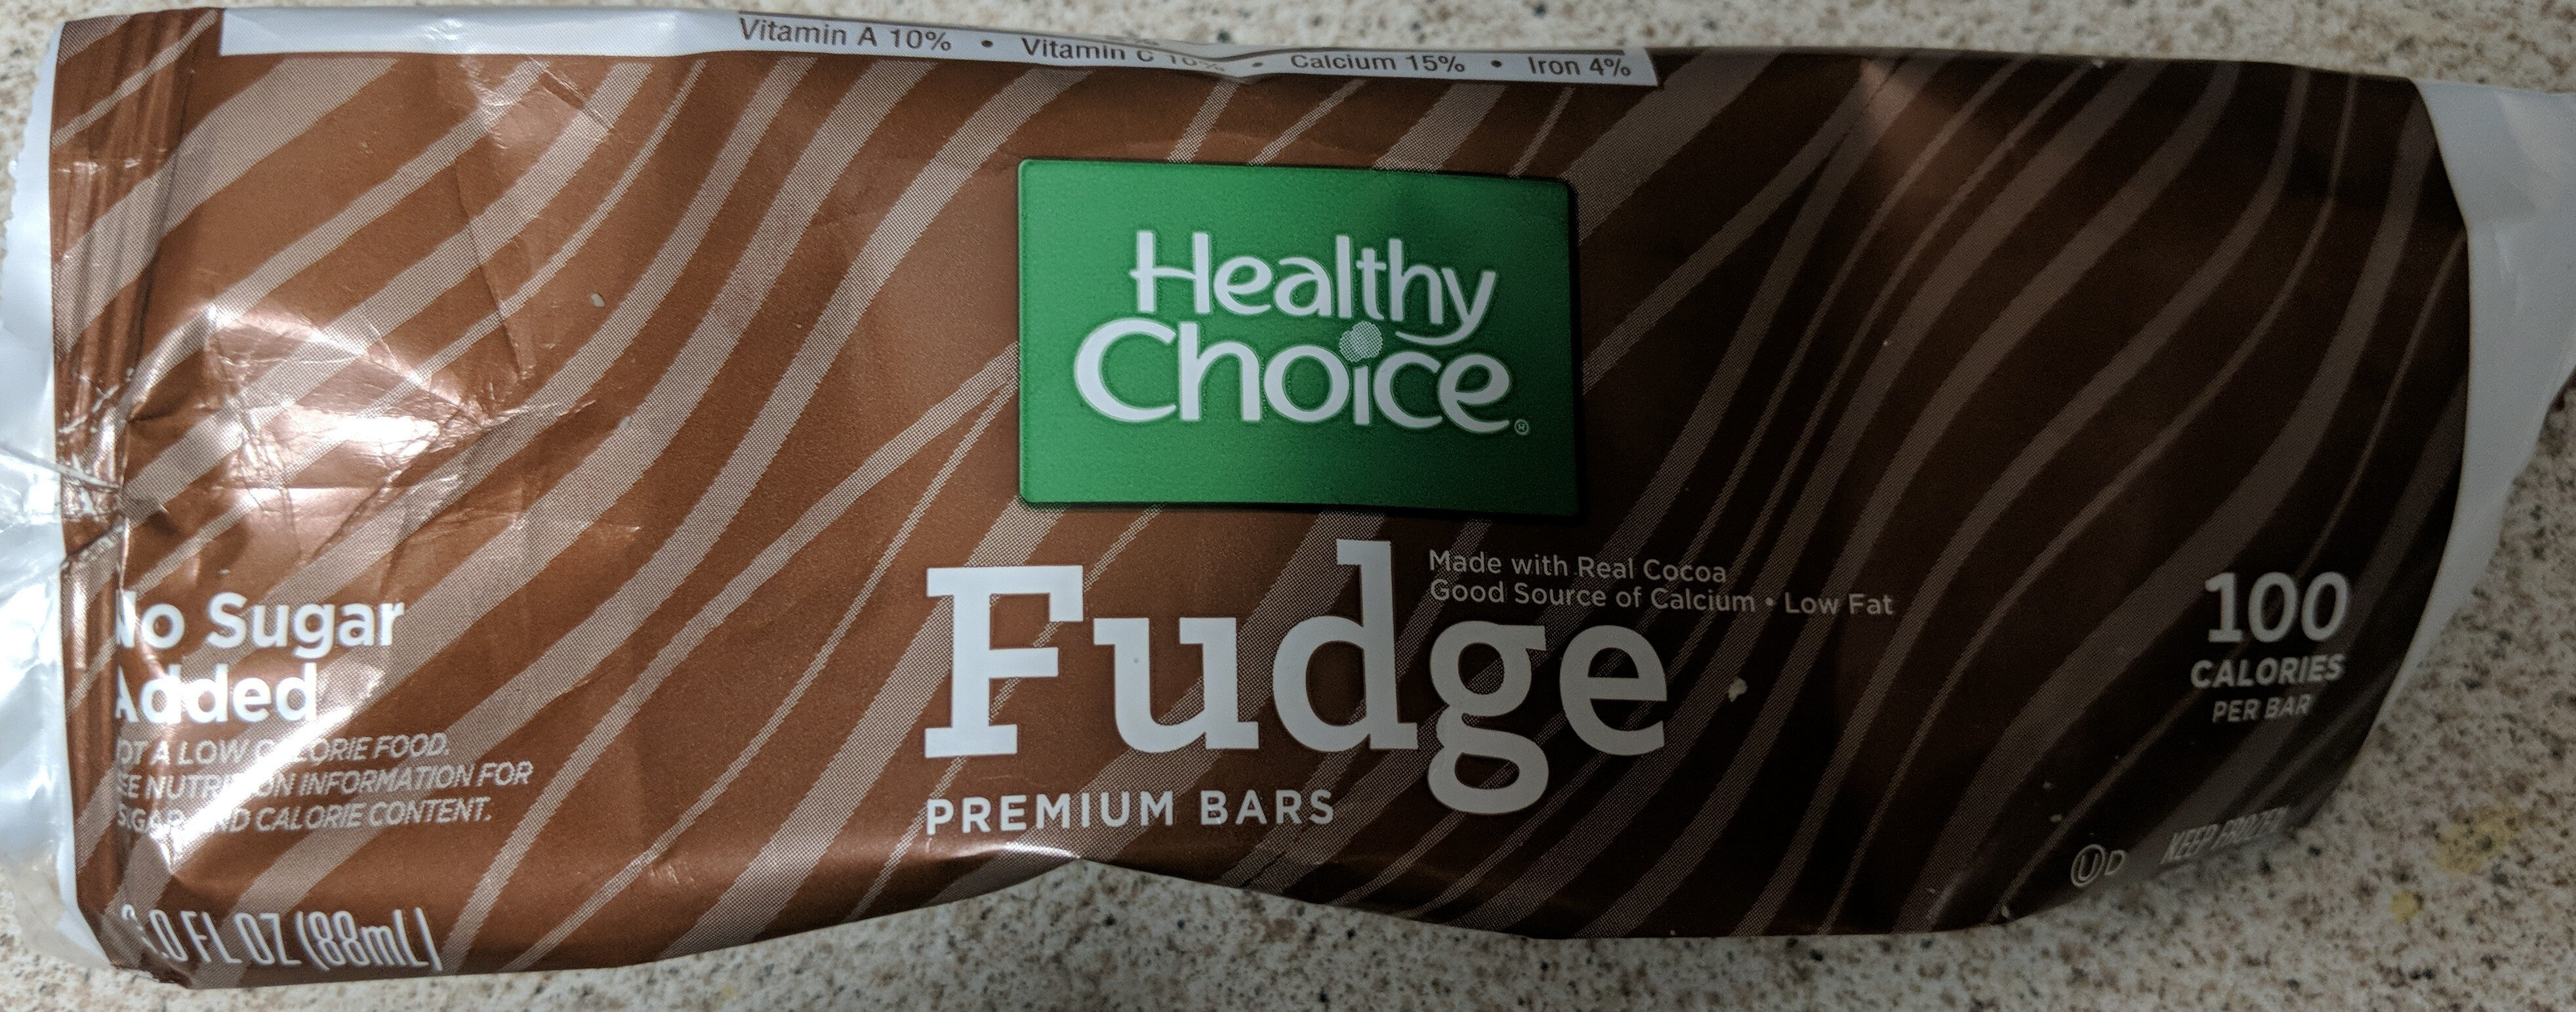 Fudge Premium bars - Product